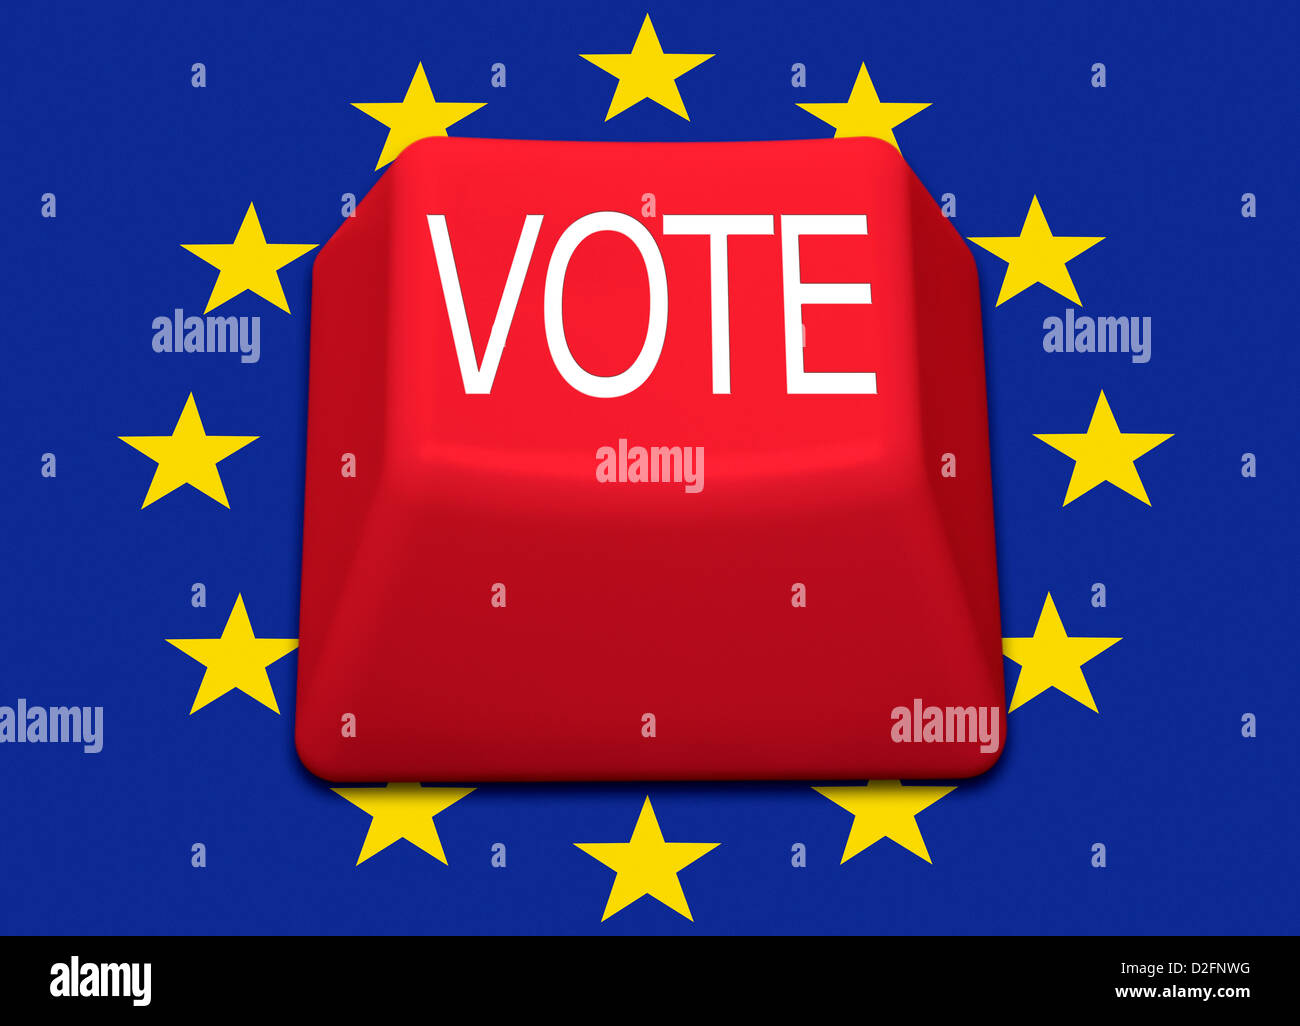 Isolierte rote Taste mit dem Wort Abstimmung über eine Europäische Union Flagge Hintergrund - UK Referendum über Europa-Abstimmung Stockfoto